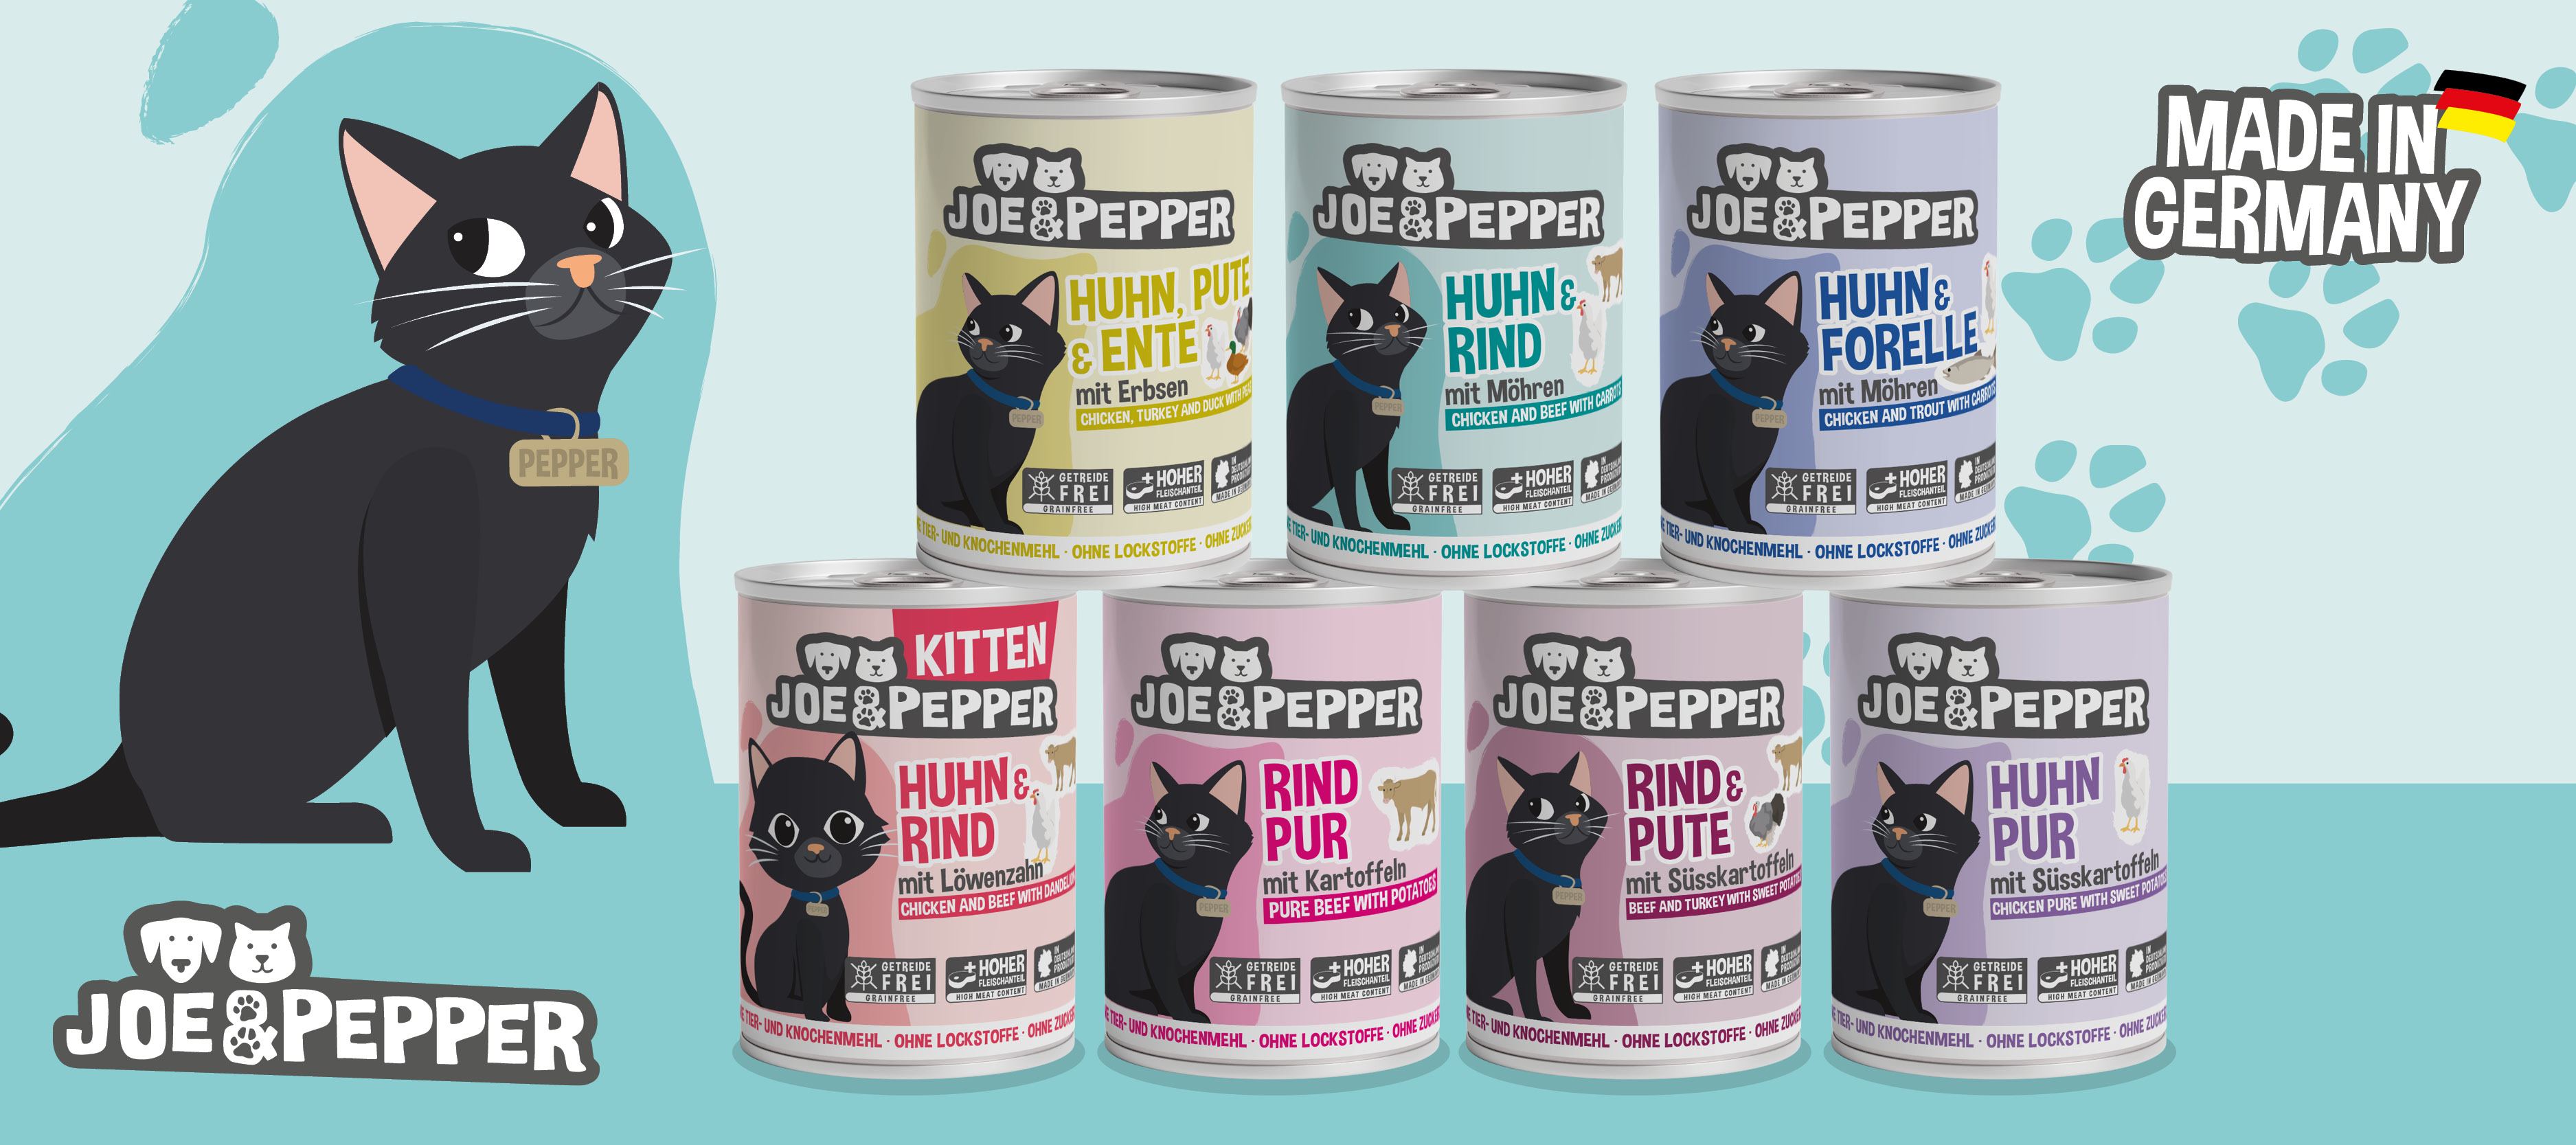 Joe & Pepper Katze - Das komplette Sortiment bei uns!